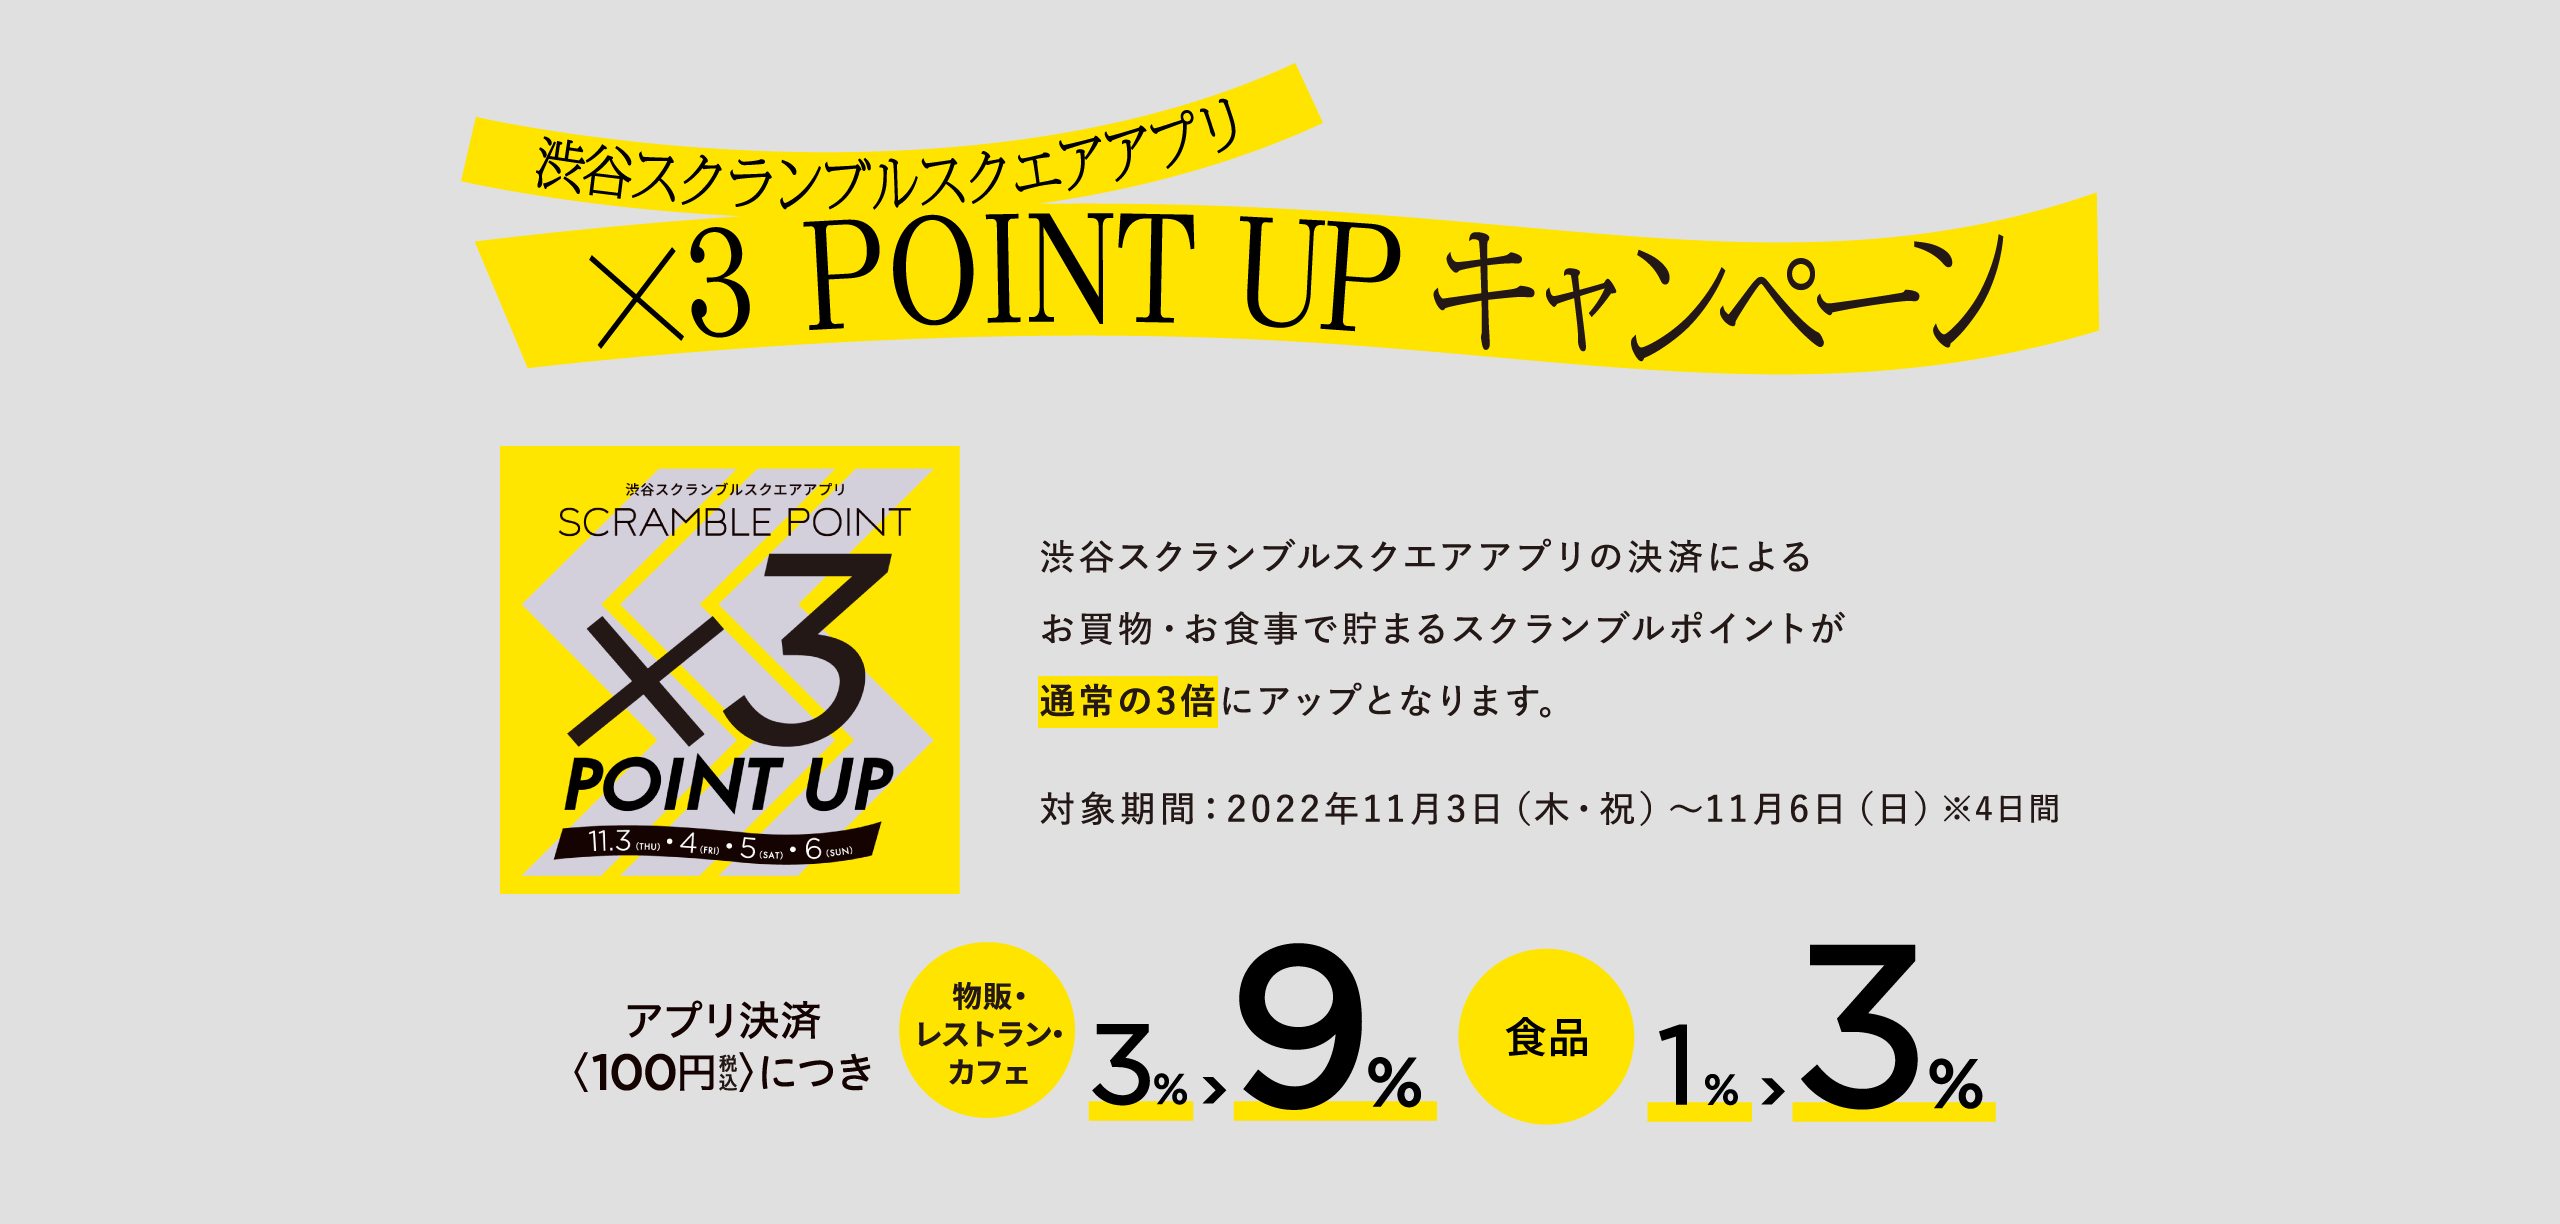 渋谷スクランブルスクエアアプリ ×3 POINT UPキャンペーン